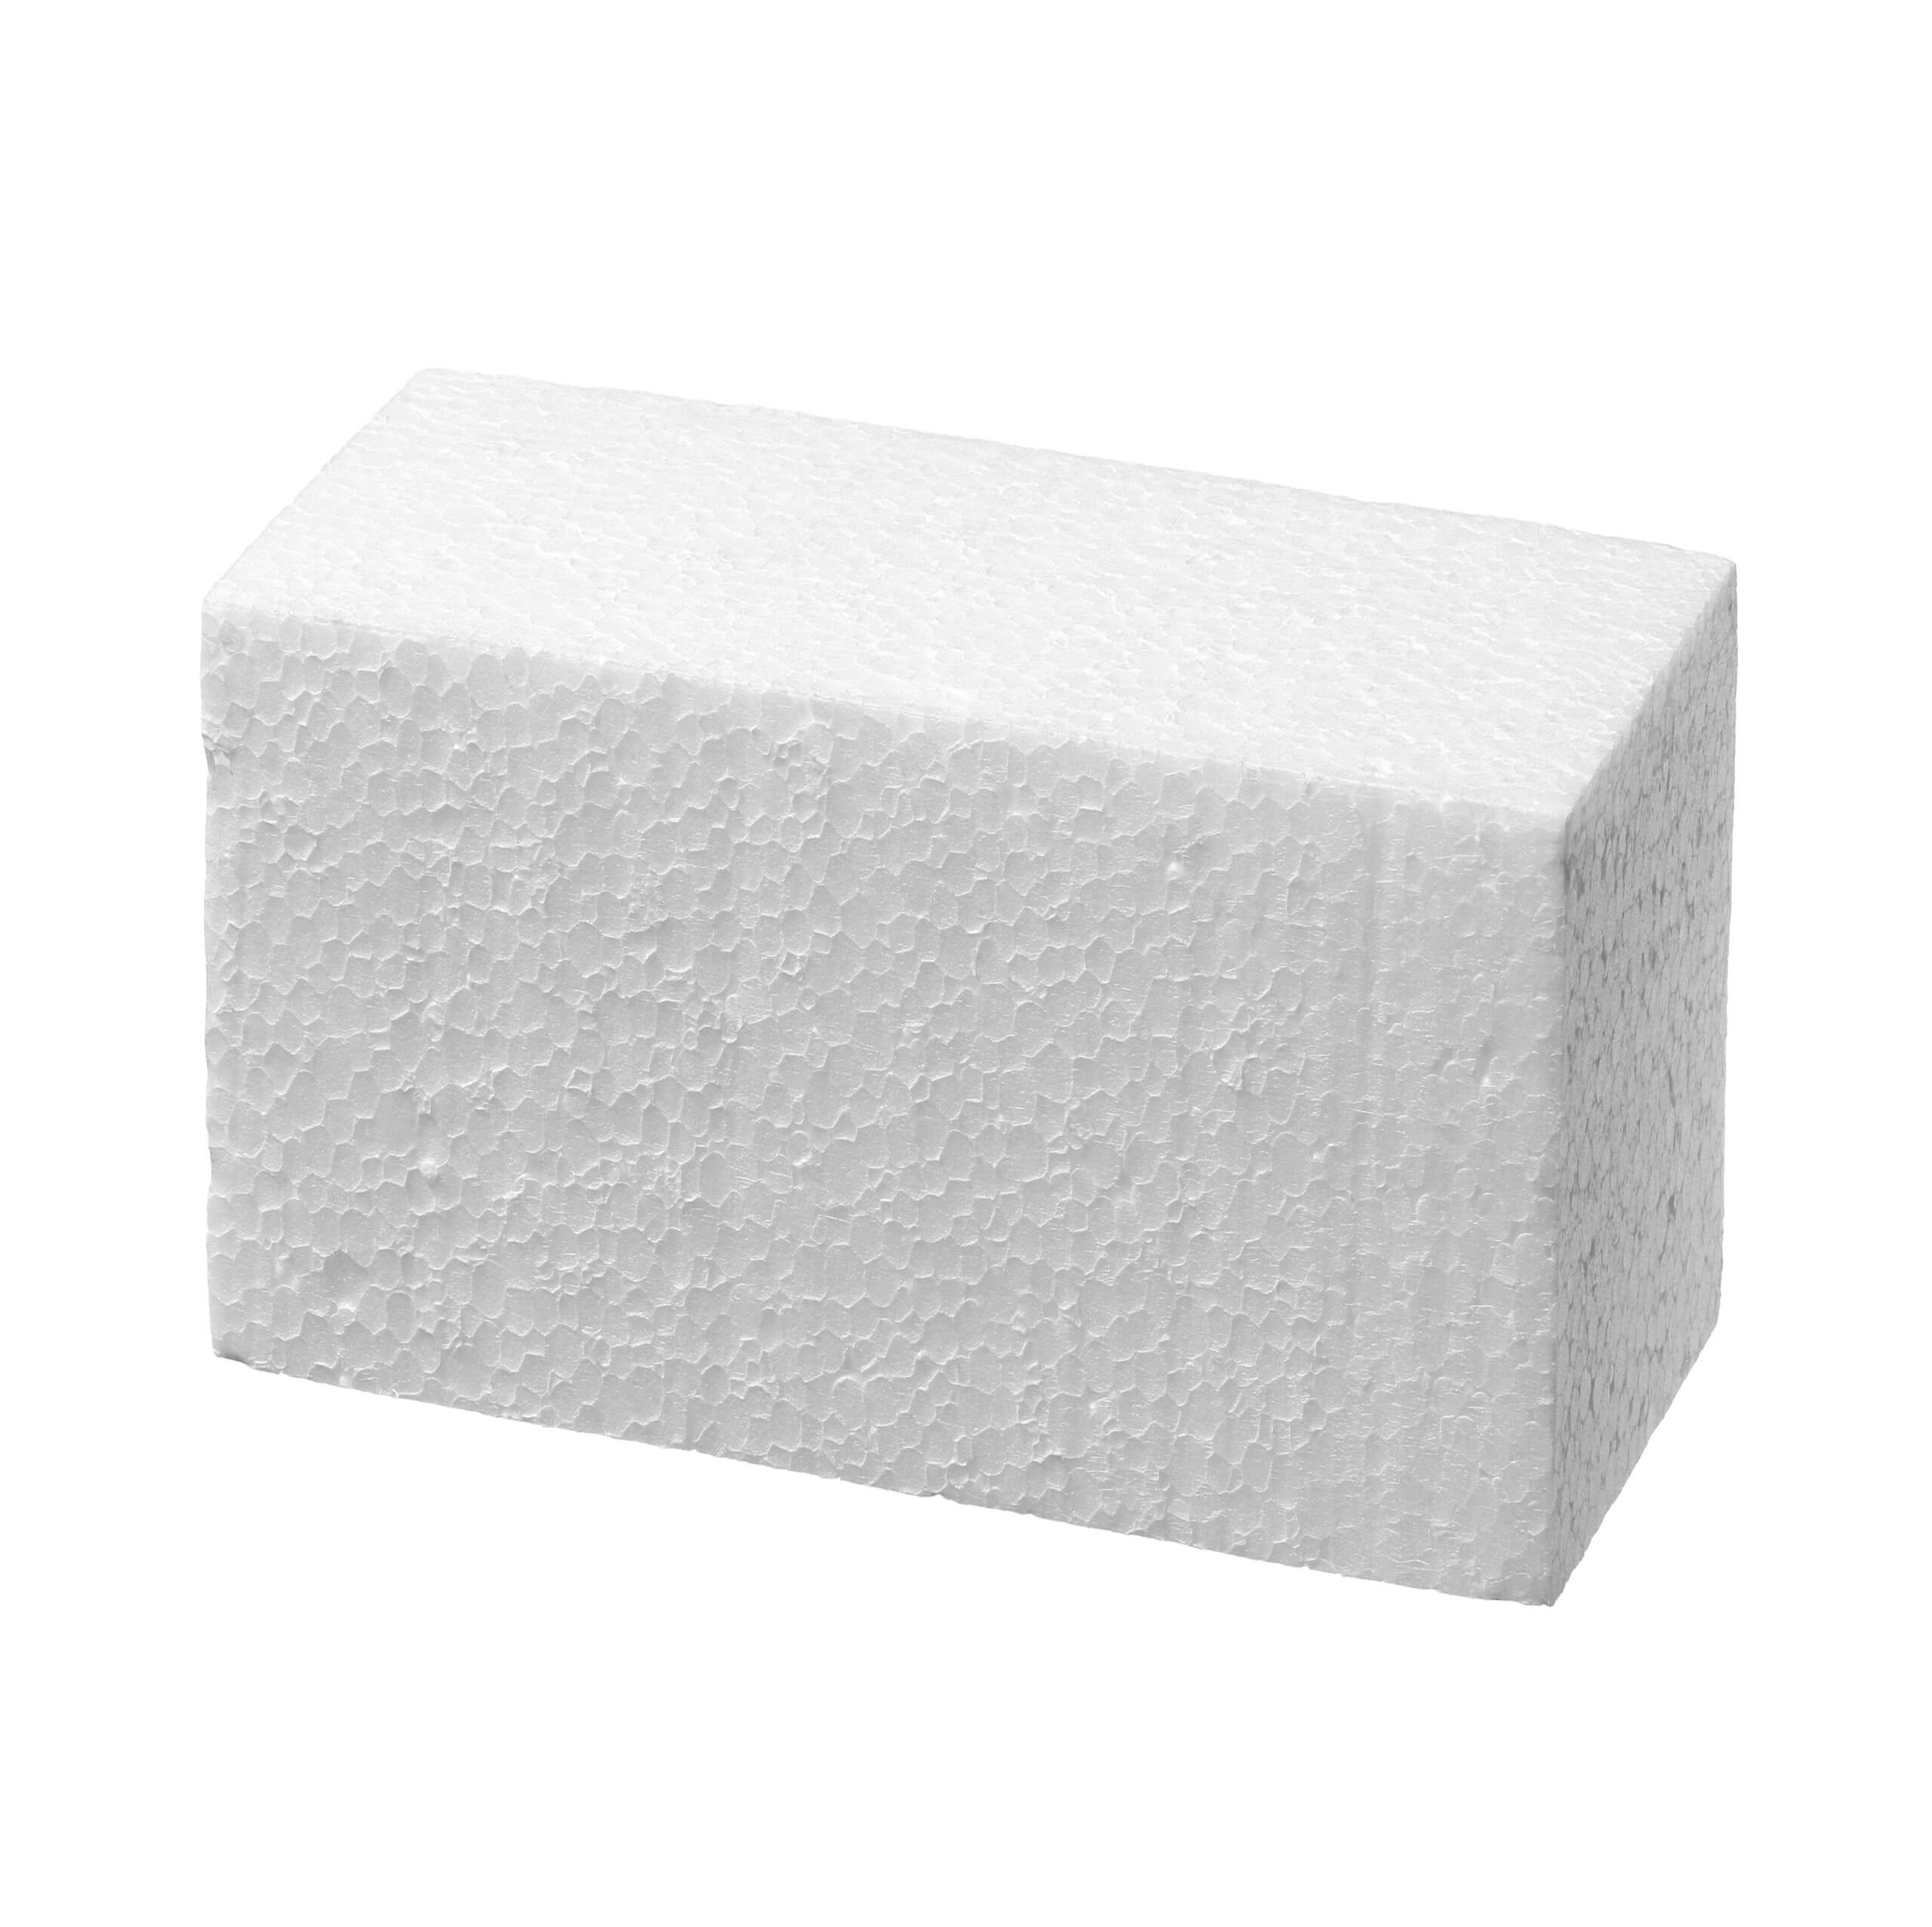 An image of a Polystyrene Foam Block.